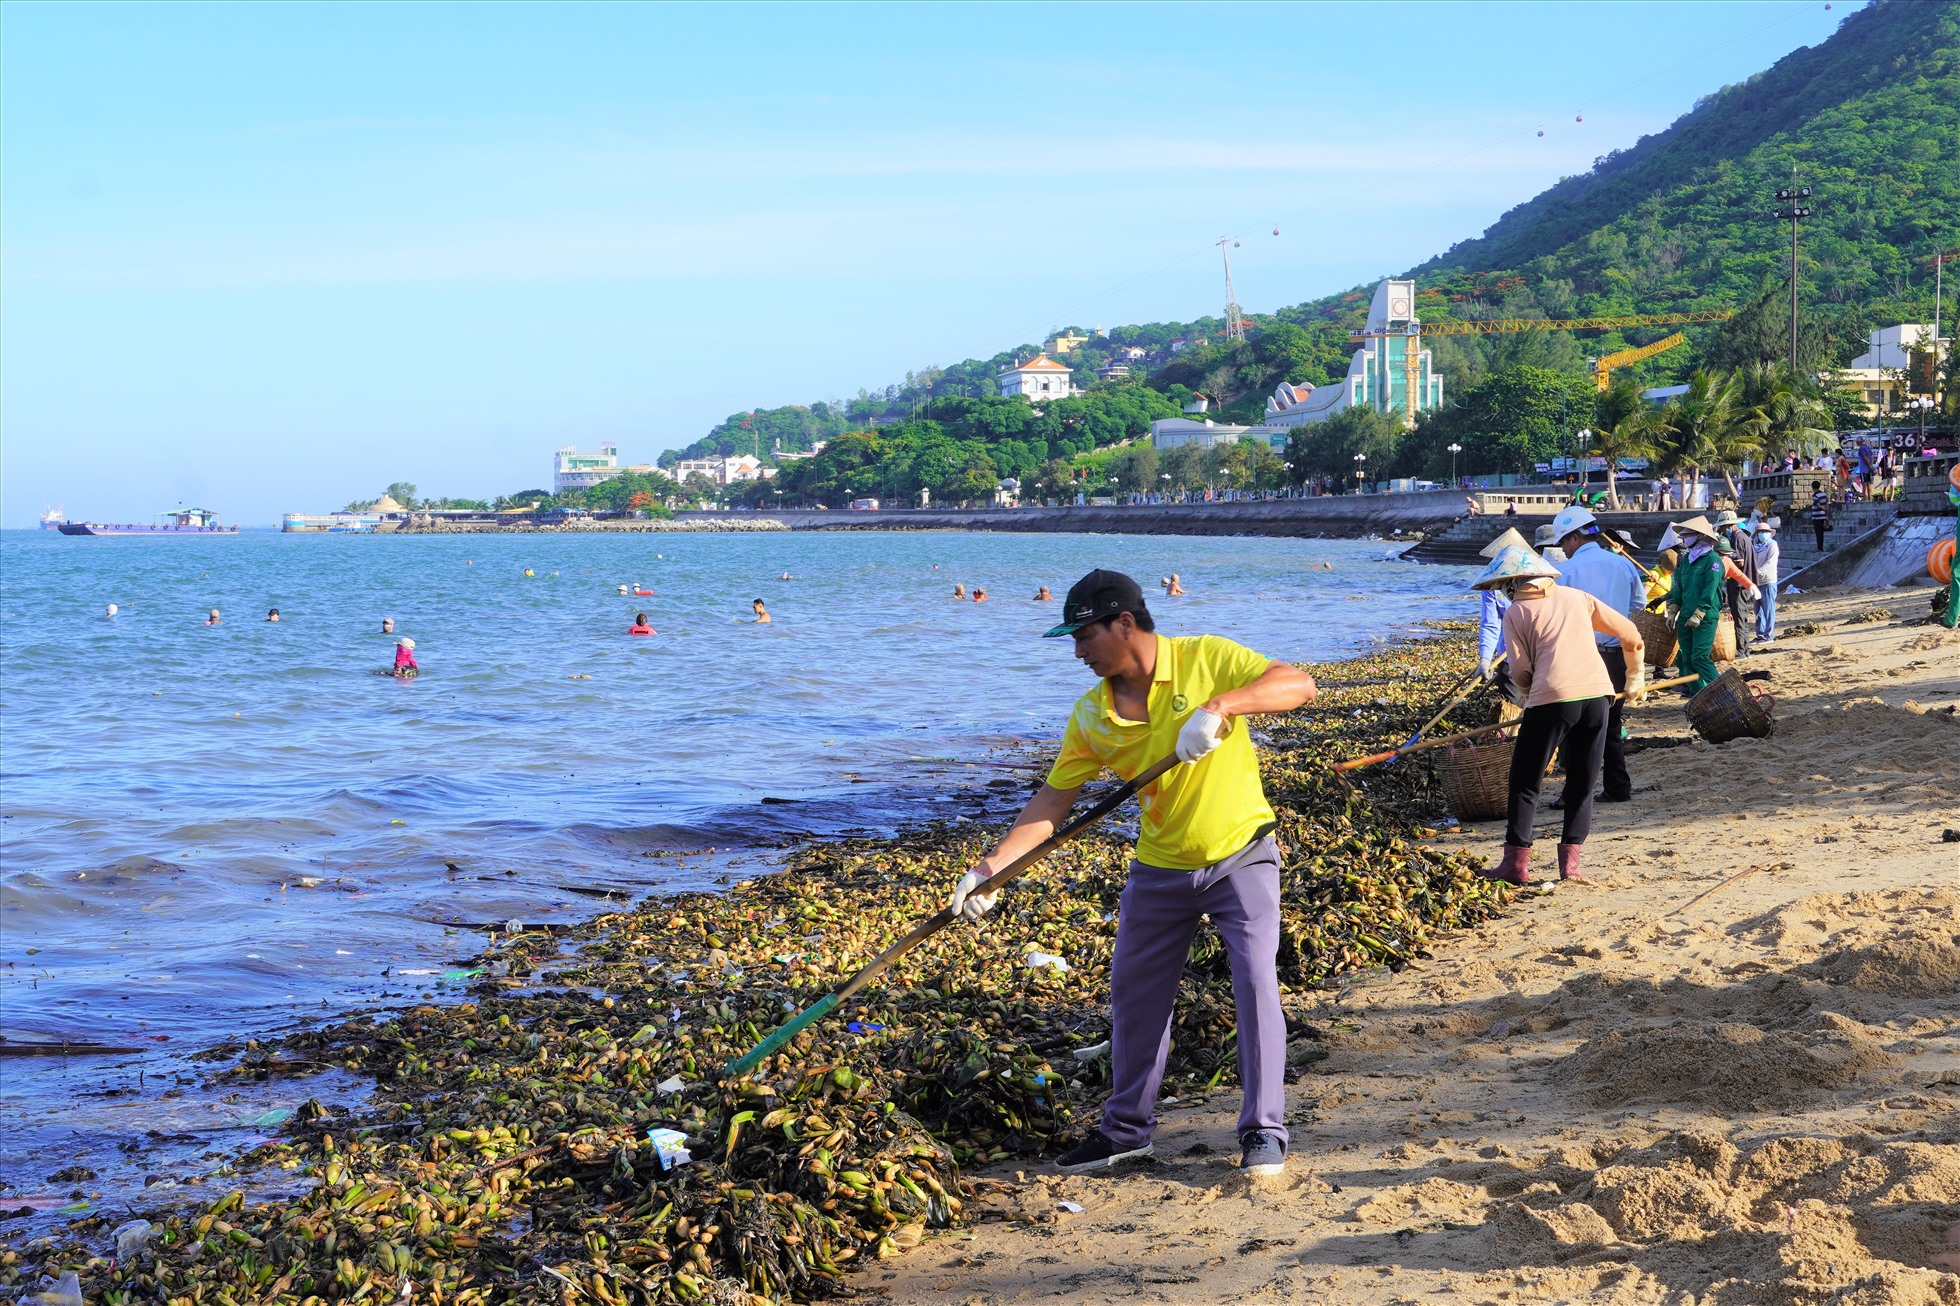 Trước tình hình đó, Công ty Cổ phần Dịch vụ môi trường và Công trình đô thị Vũng Tàu (VESCO) đã huy động hơn 120 người, kể cả công nhân văn phòng tham gia thu gom rác trên bãi biển. Ảnh: Thành An